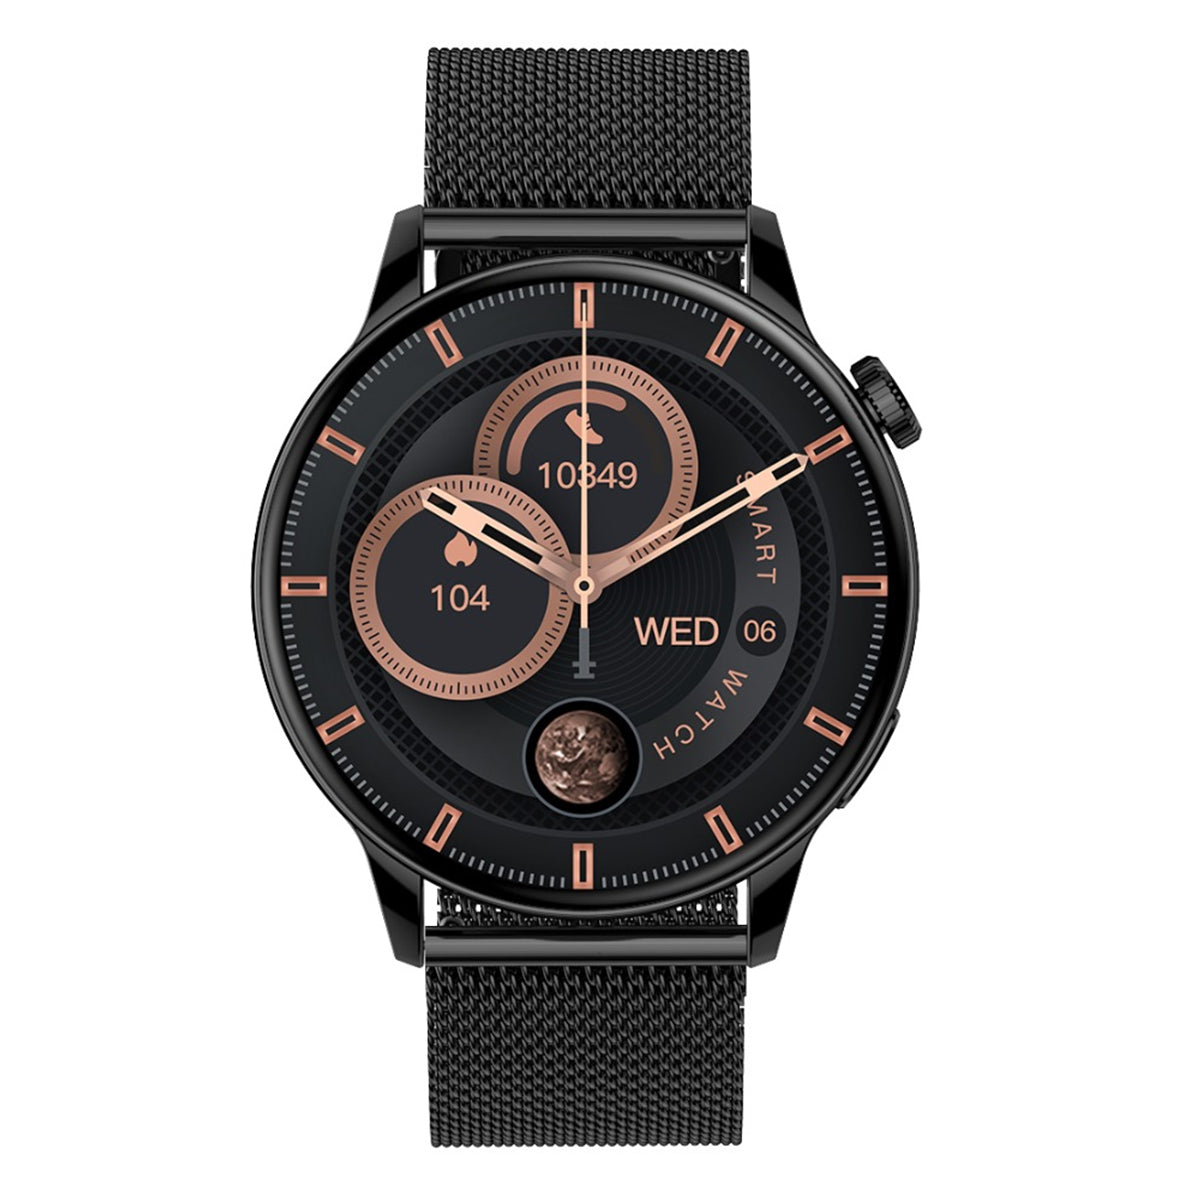 Smartwatch Reloj Inteligente Fralugio Hd1 Full Touch De Lujo